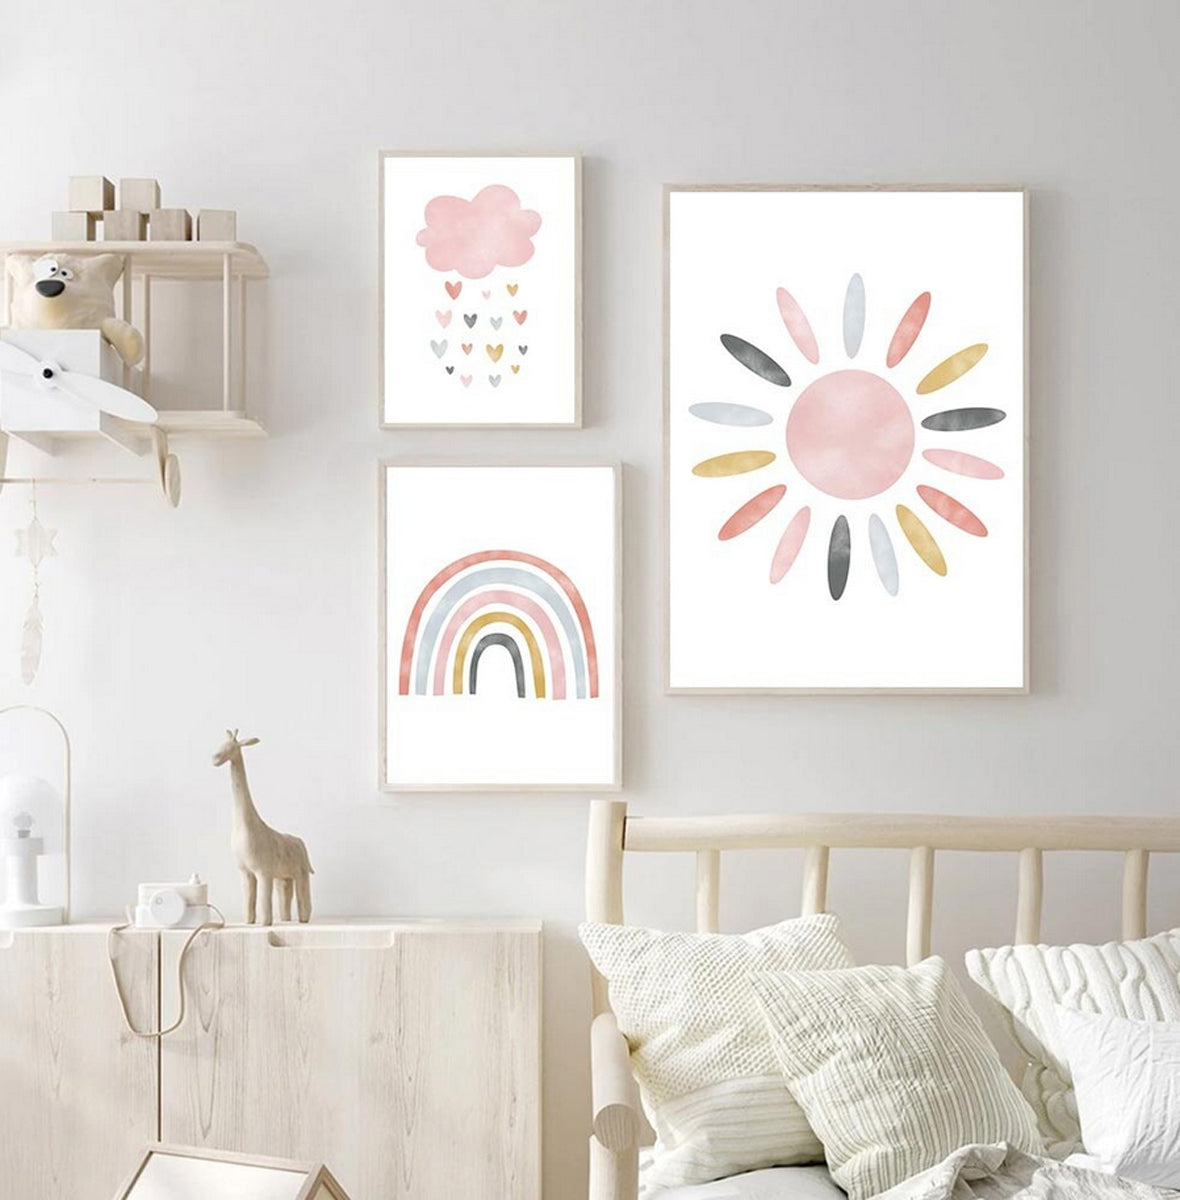 TPFLiving Poster Leinwand / Sonne, Wolken, Herzen, Regenbogen für Kinderzimmer - Auch im 3er Set / Verschiedene Größen - OHNE Rahmen - Modell k4230